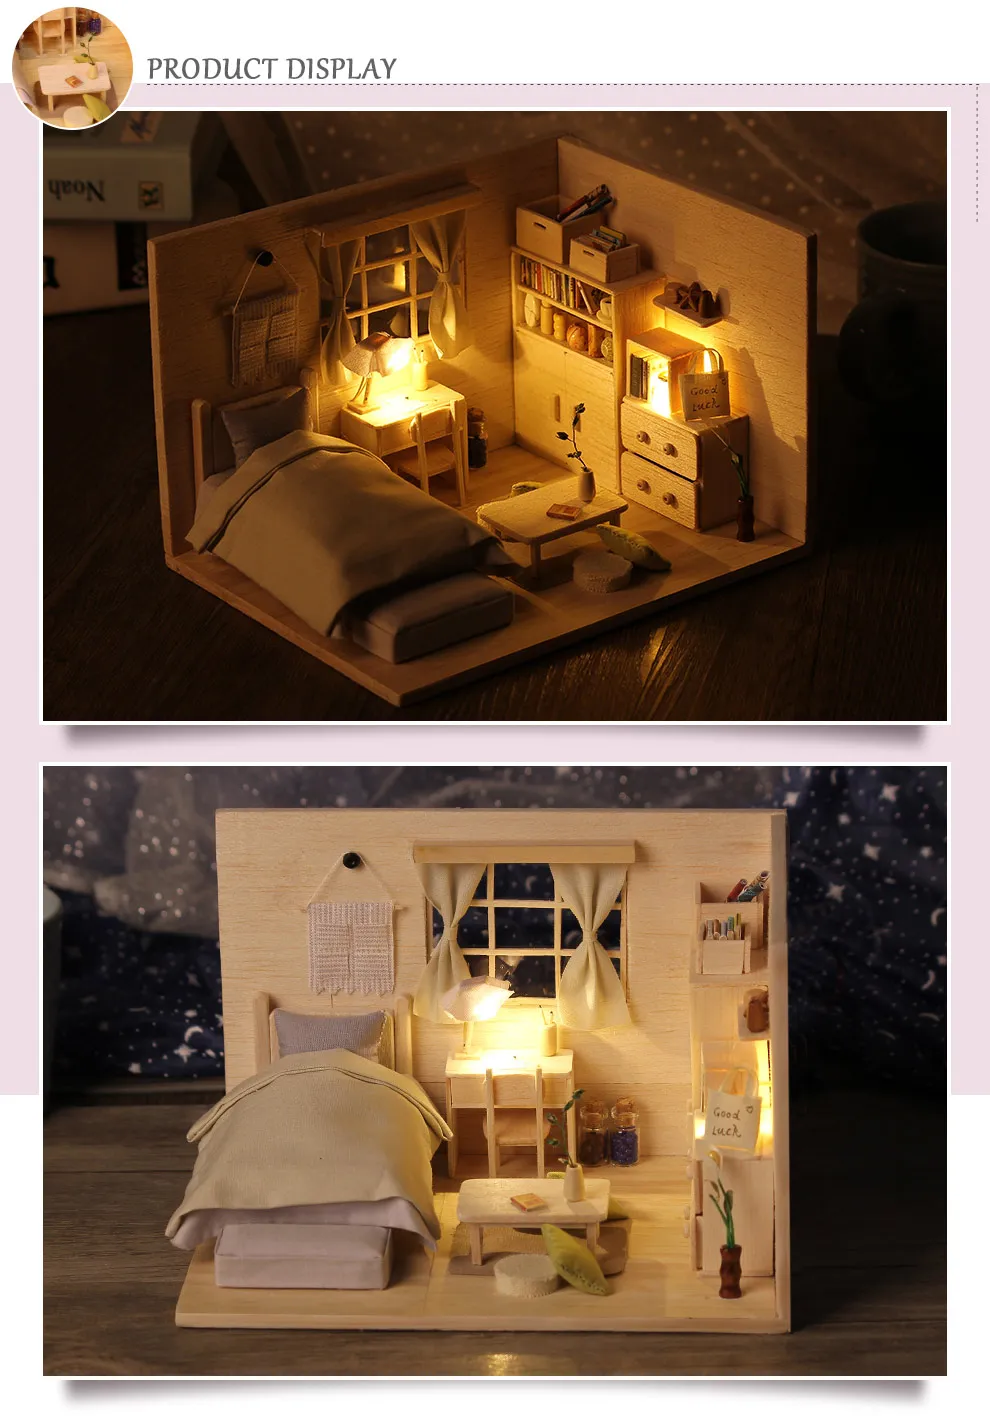 3D Деревянный Miniaturas кукольный домик игрушки для детей подарки на день рождения котенок дневник кукольный дом мебель Diy Миниатюрный пылезащитный чехол